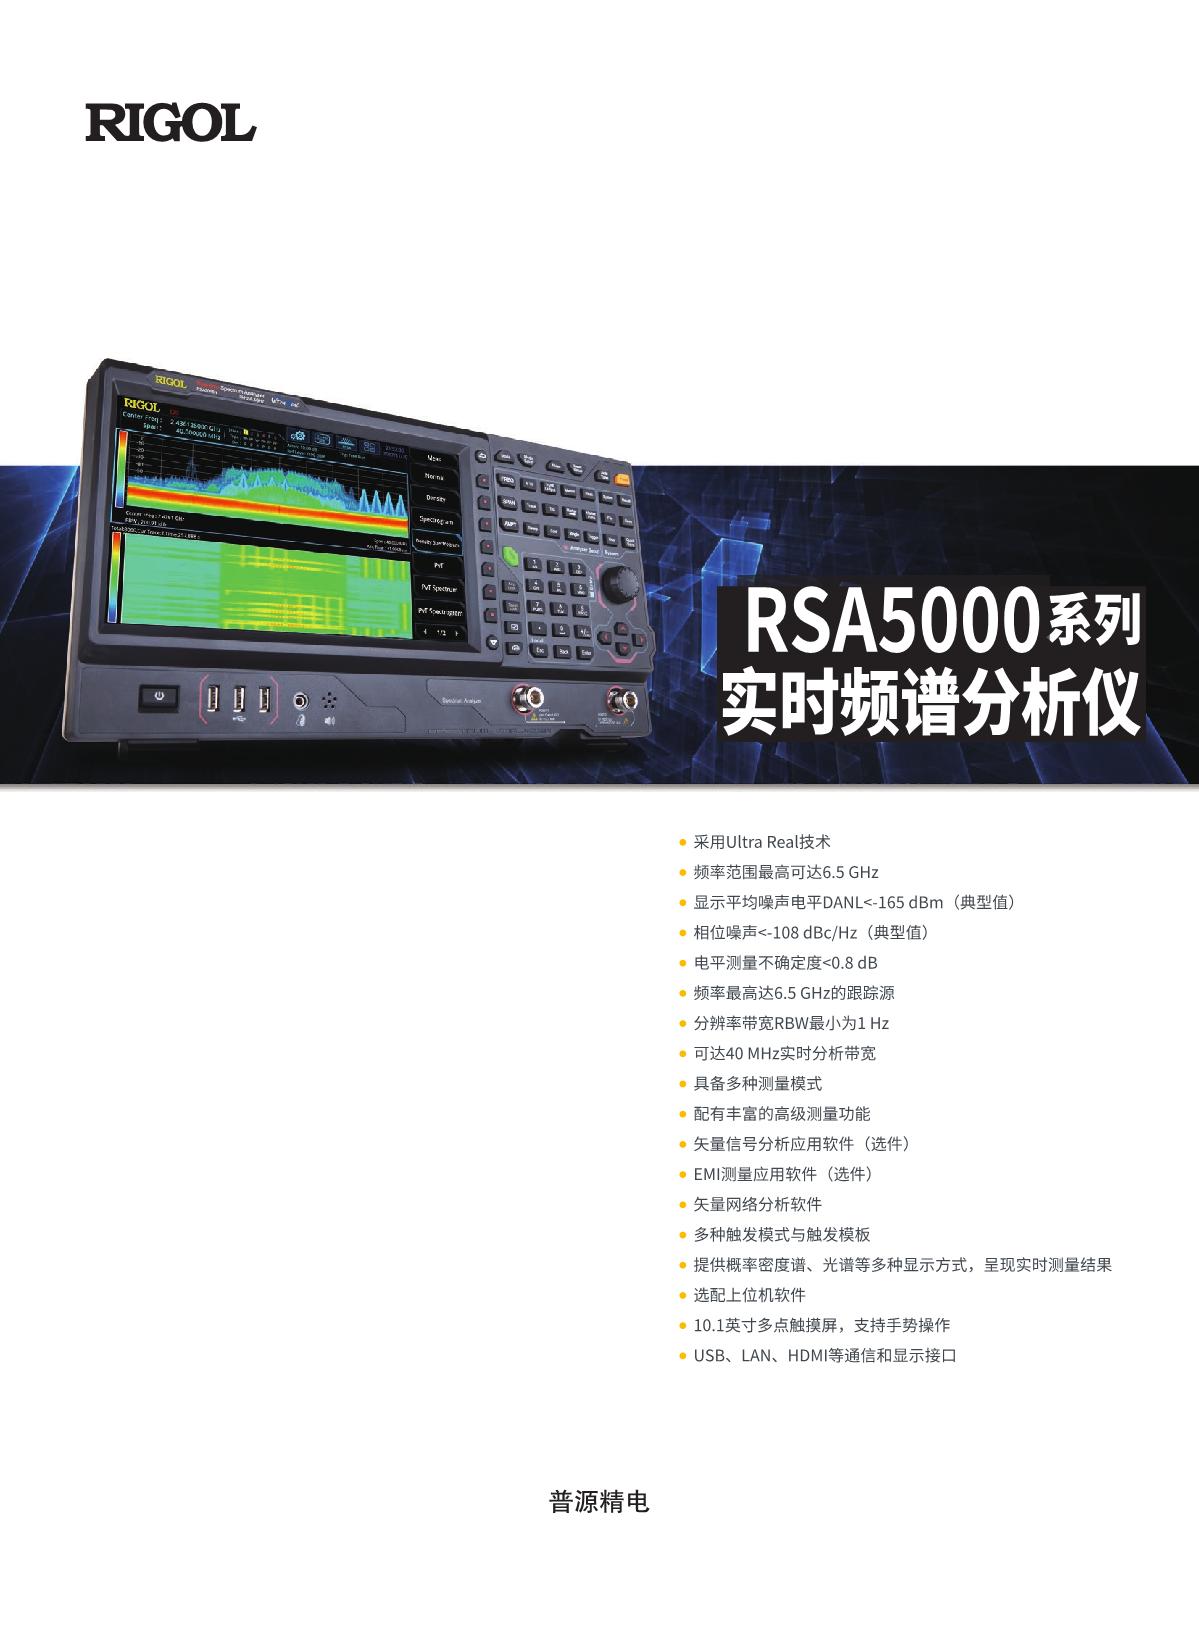 vna-RSA5000数据手册-202111-CN_tcm4-1873_1.JPG